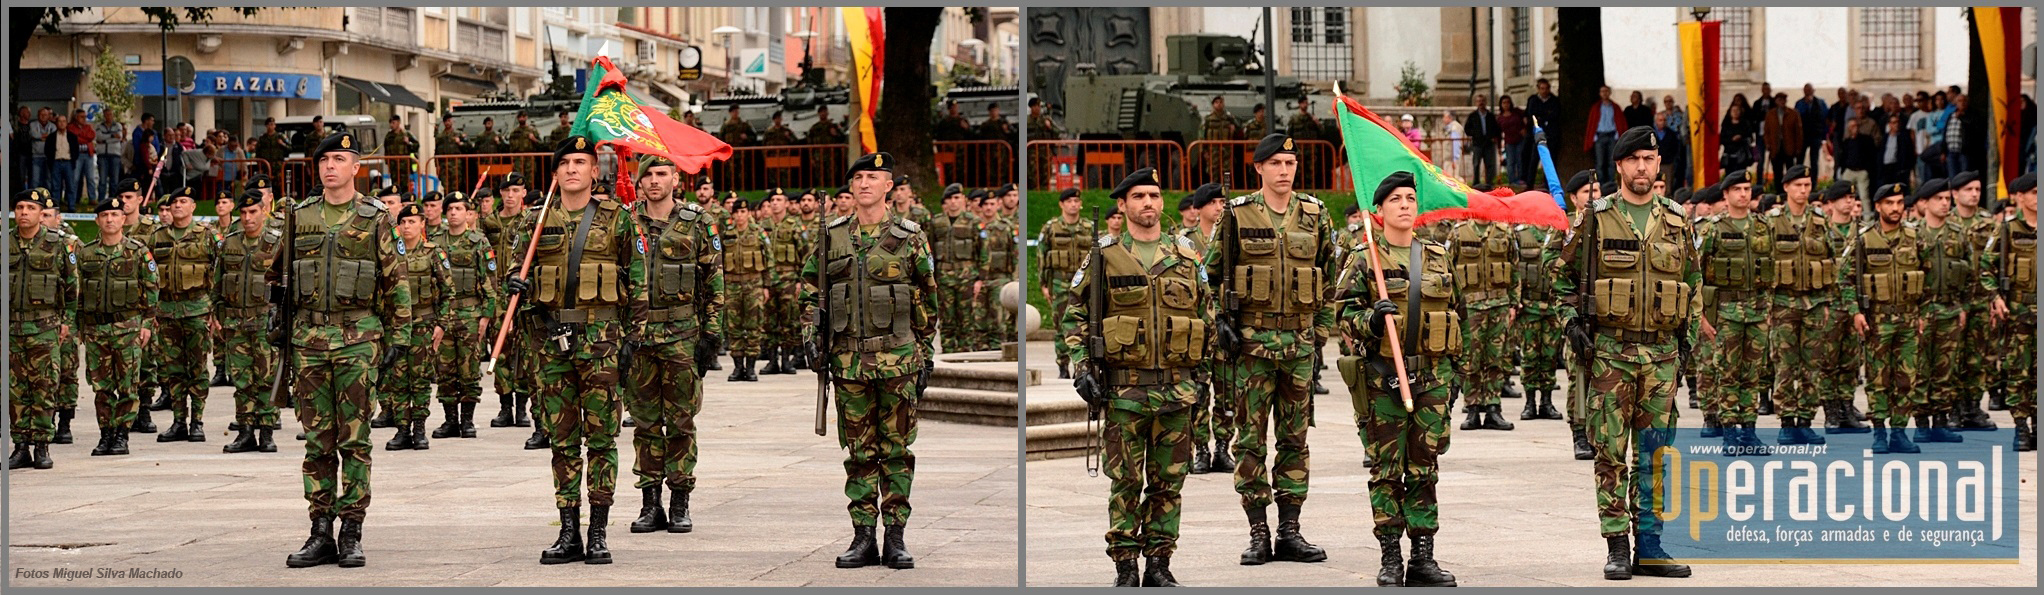 Os Estandartes Nacionais das duas Forças Nacionais Destacadas, durante o treino para a sua derradeira cerimónia militar.